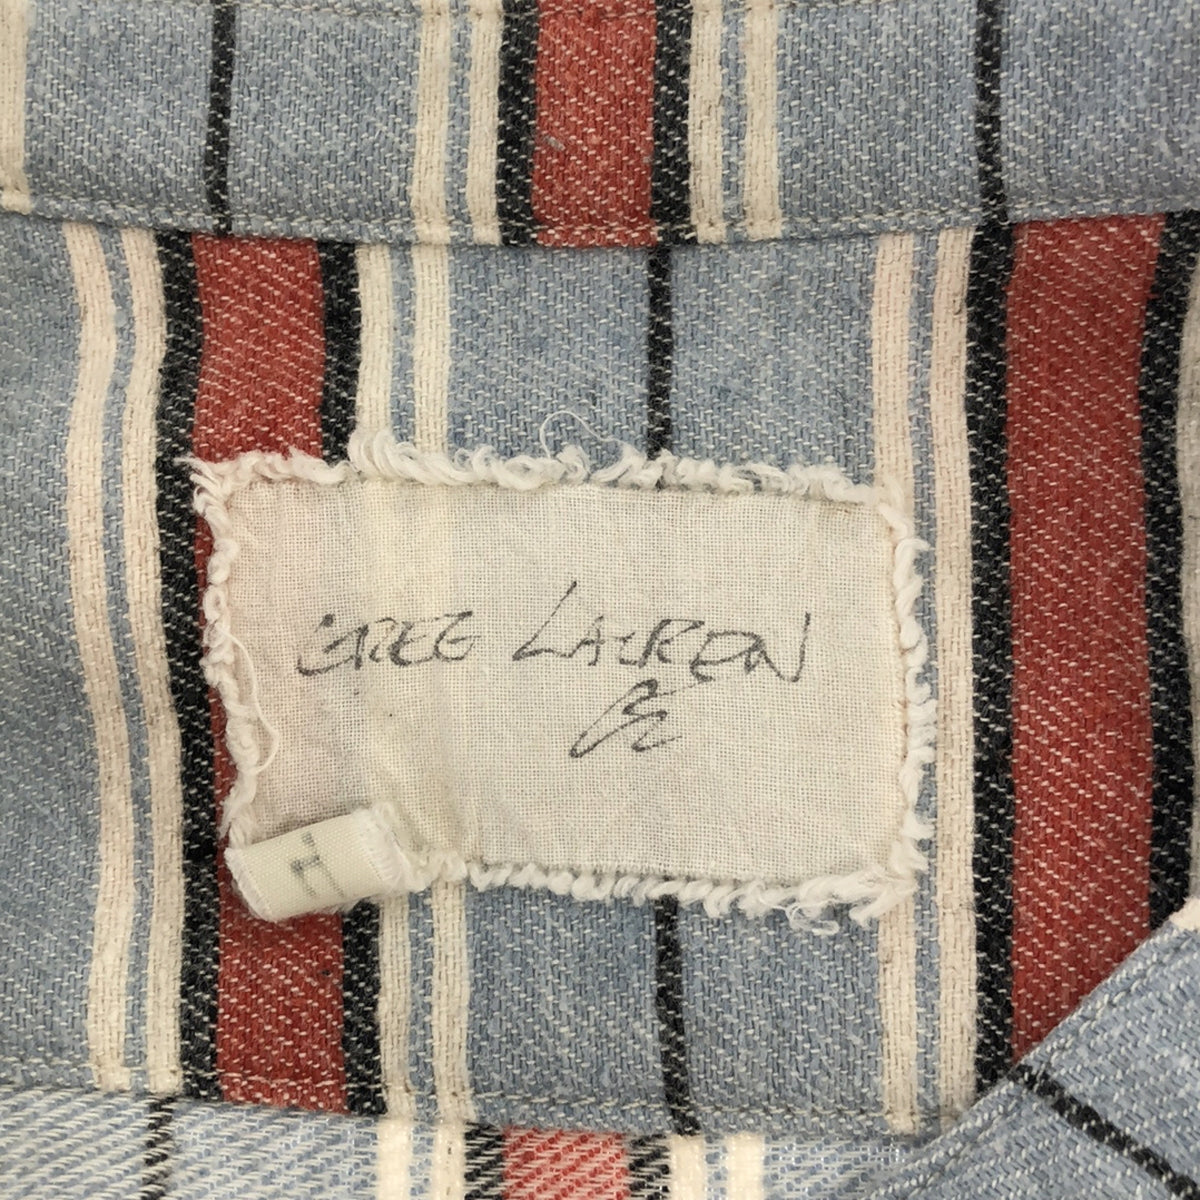 GREG LAUREN / グレッグローレン | STRIPE STUDIO SHIRT / コットンフランネル ストライプ オーバーシャツ ジャケット | 4 | メンズ